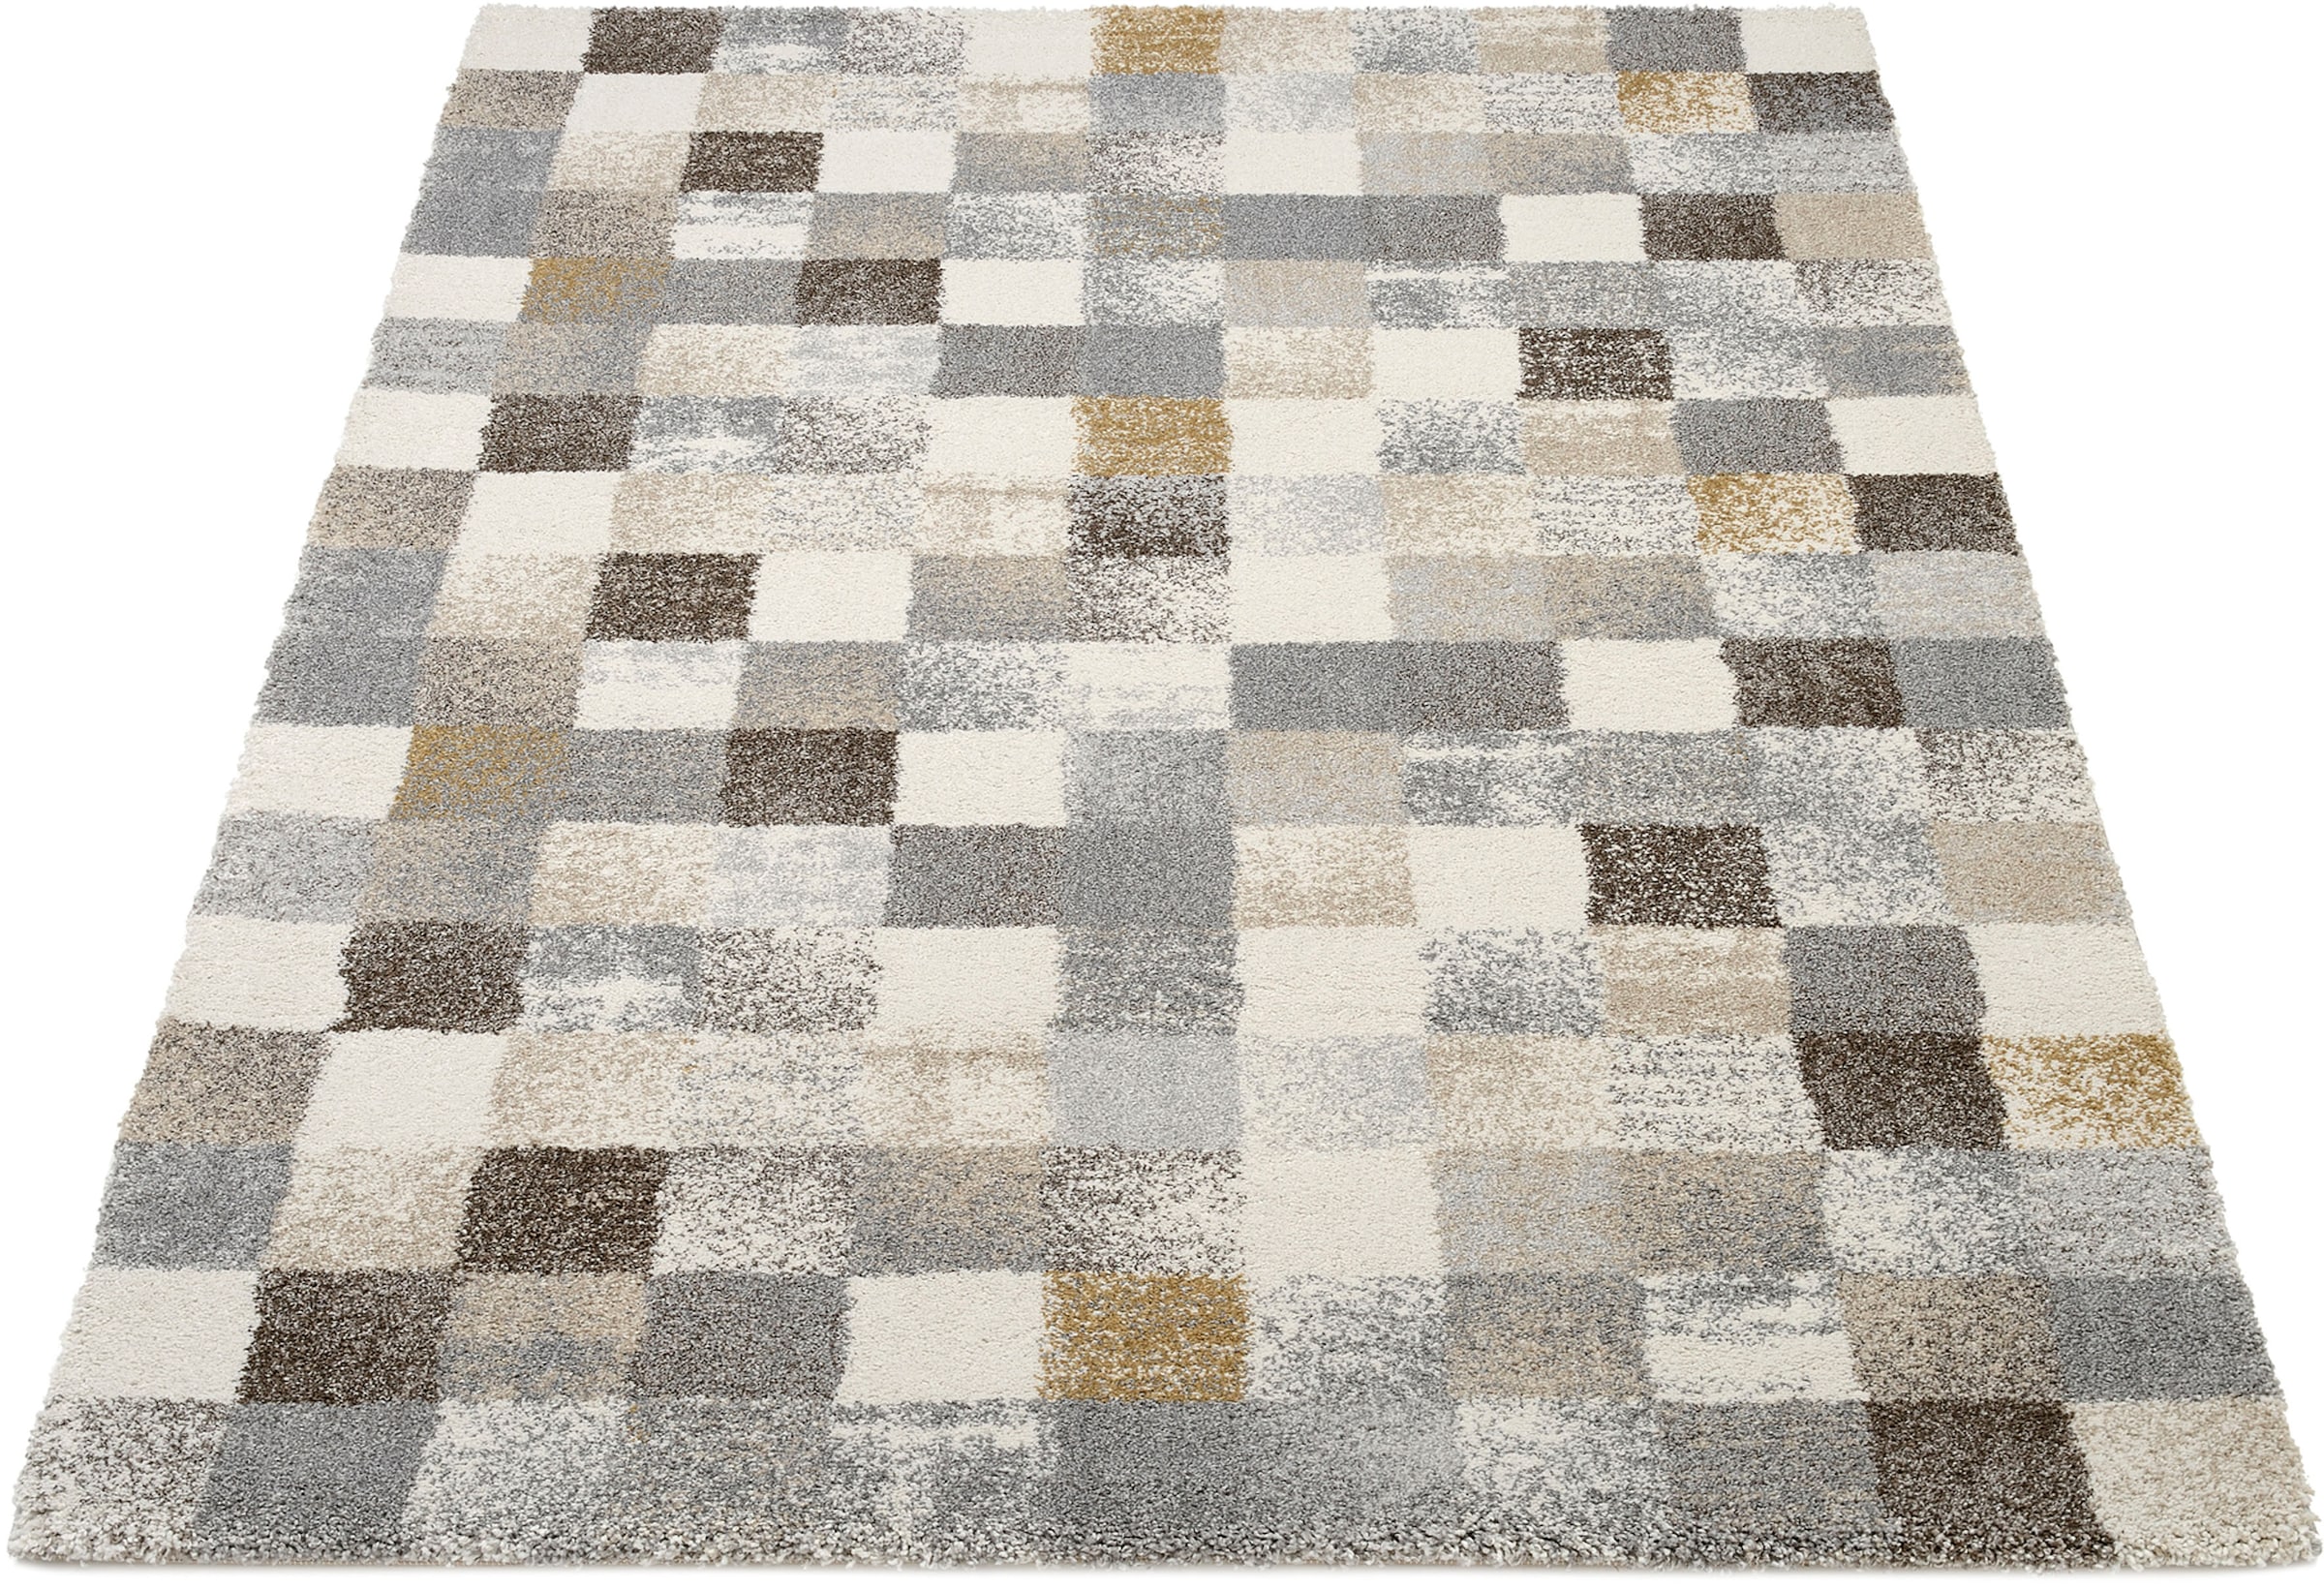 ZQYRLAR, 12 Stück, quadratische Teppich-Pads, doppelseitige rutschfeste  Teppich-Pads, rutschfest und aufrollbar für Fliesen (weiß).